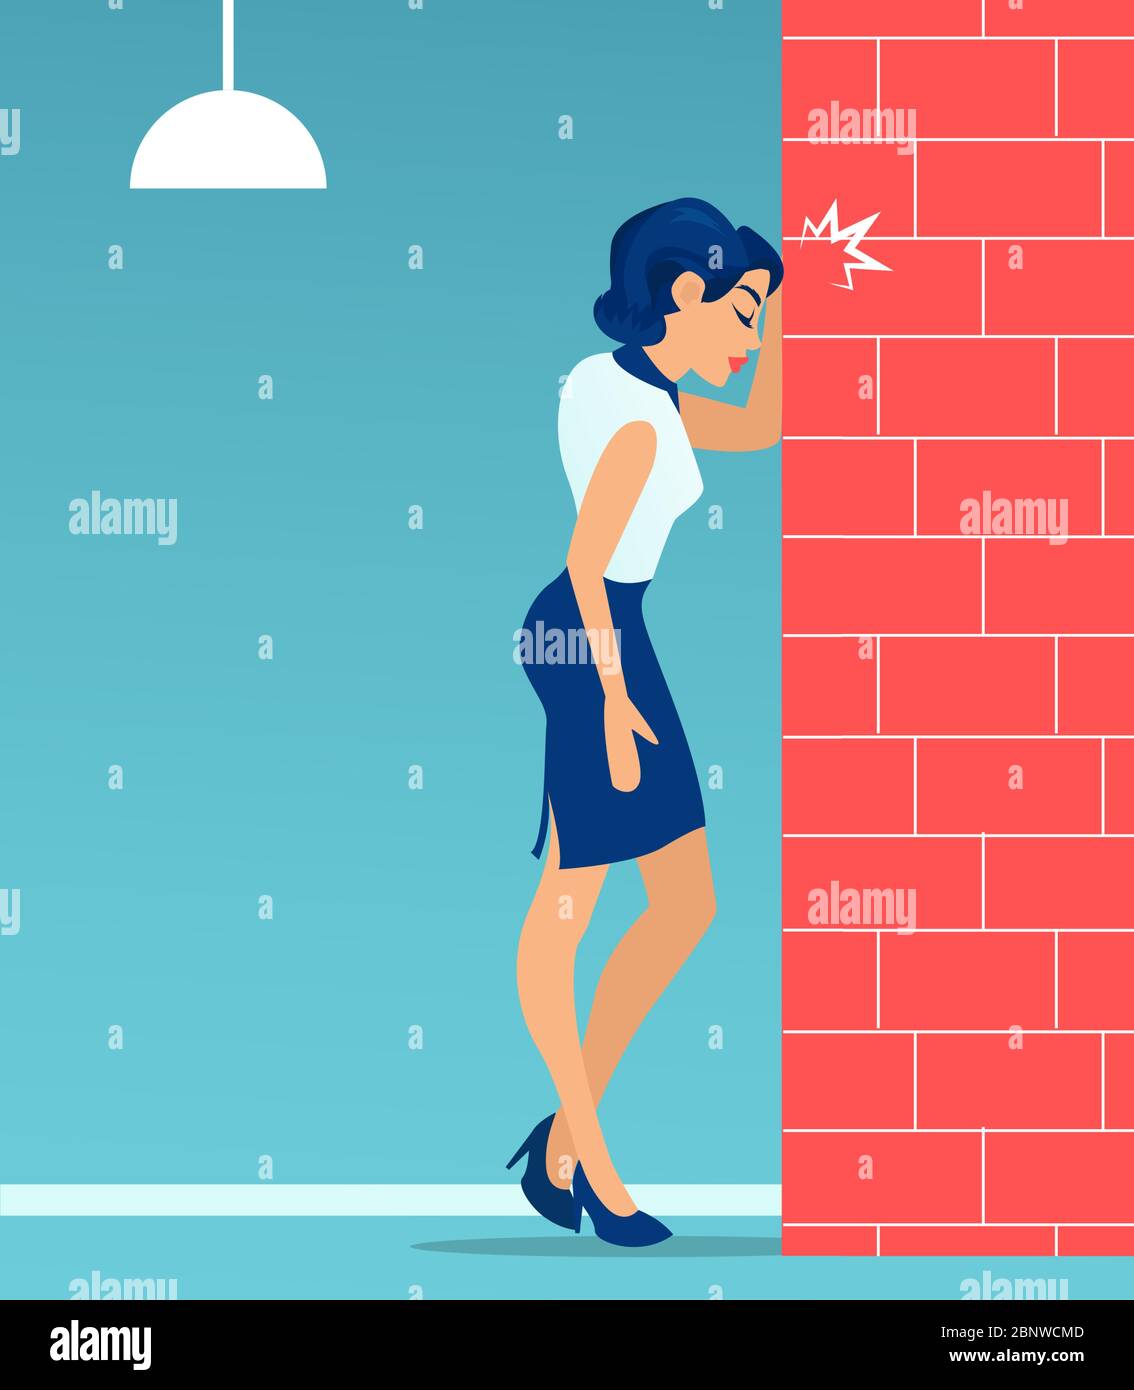 Vecteur d'une femme d'affaires stressée qui se cognait la tête dans la frustration contre un mur Illustration de Vecteur